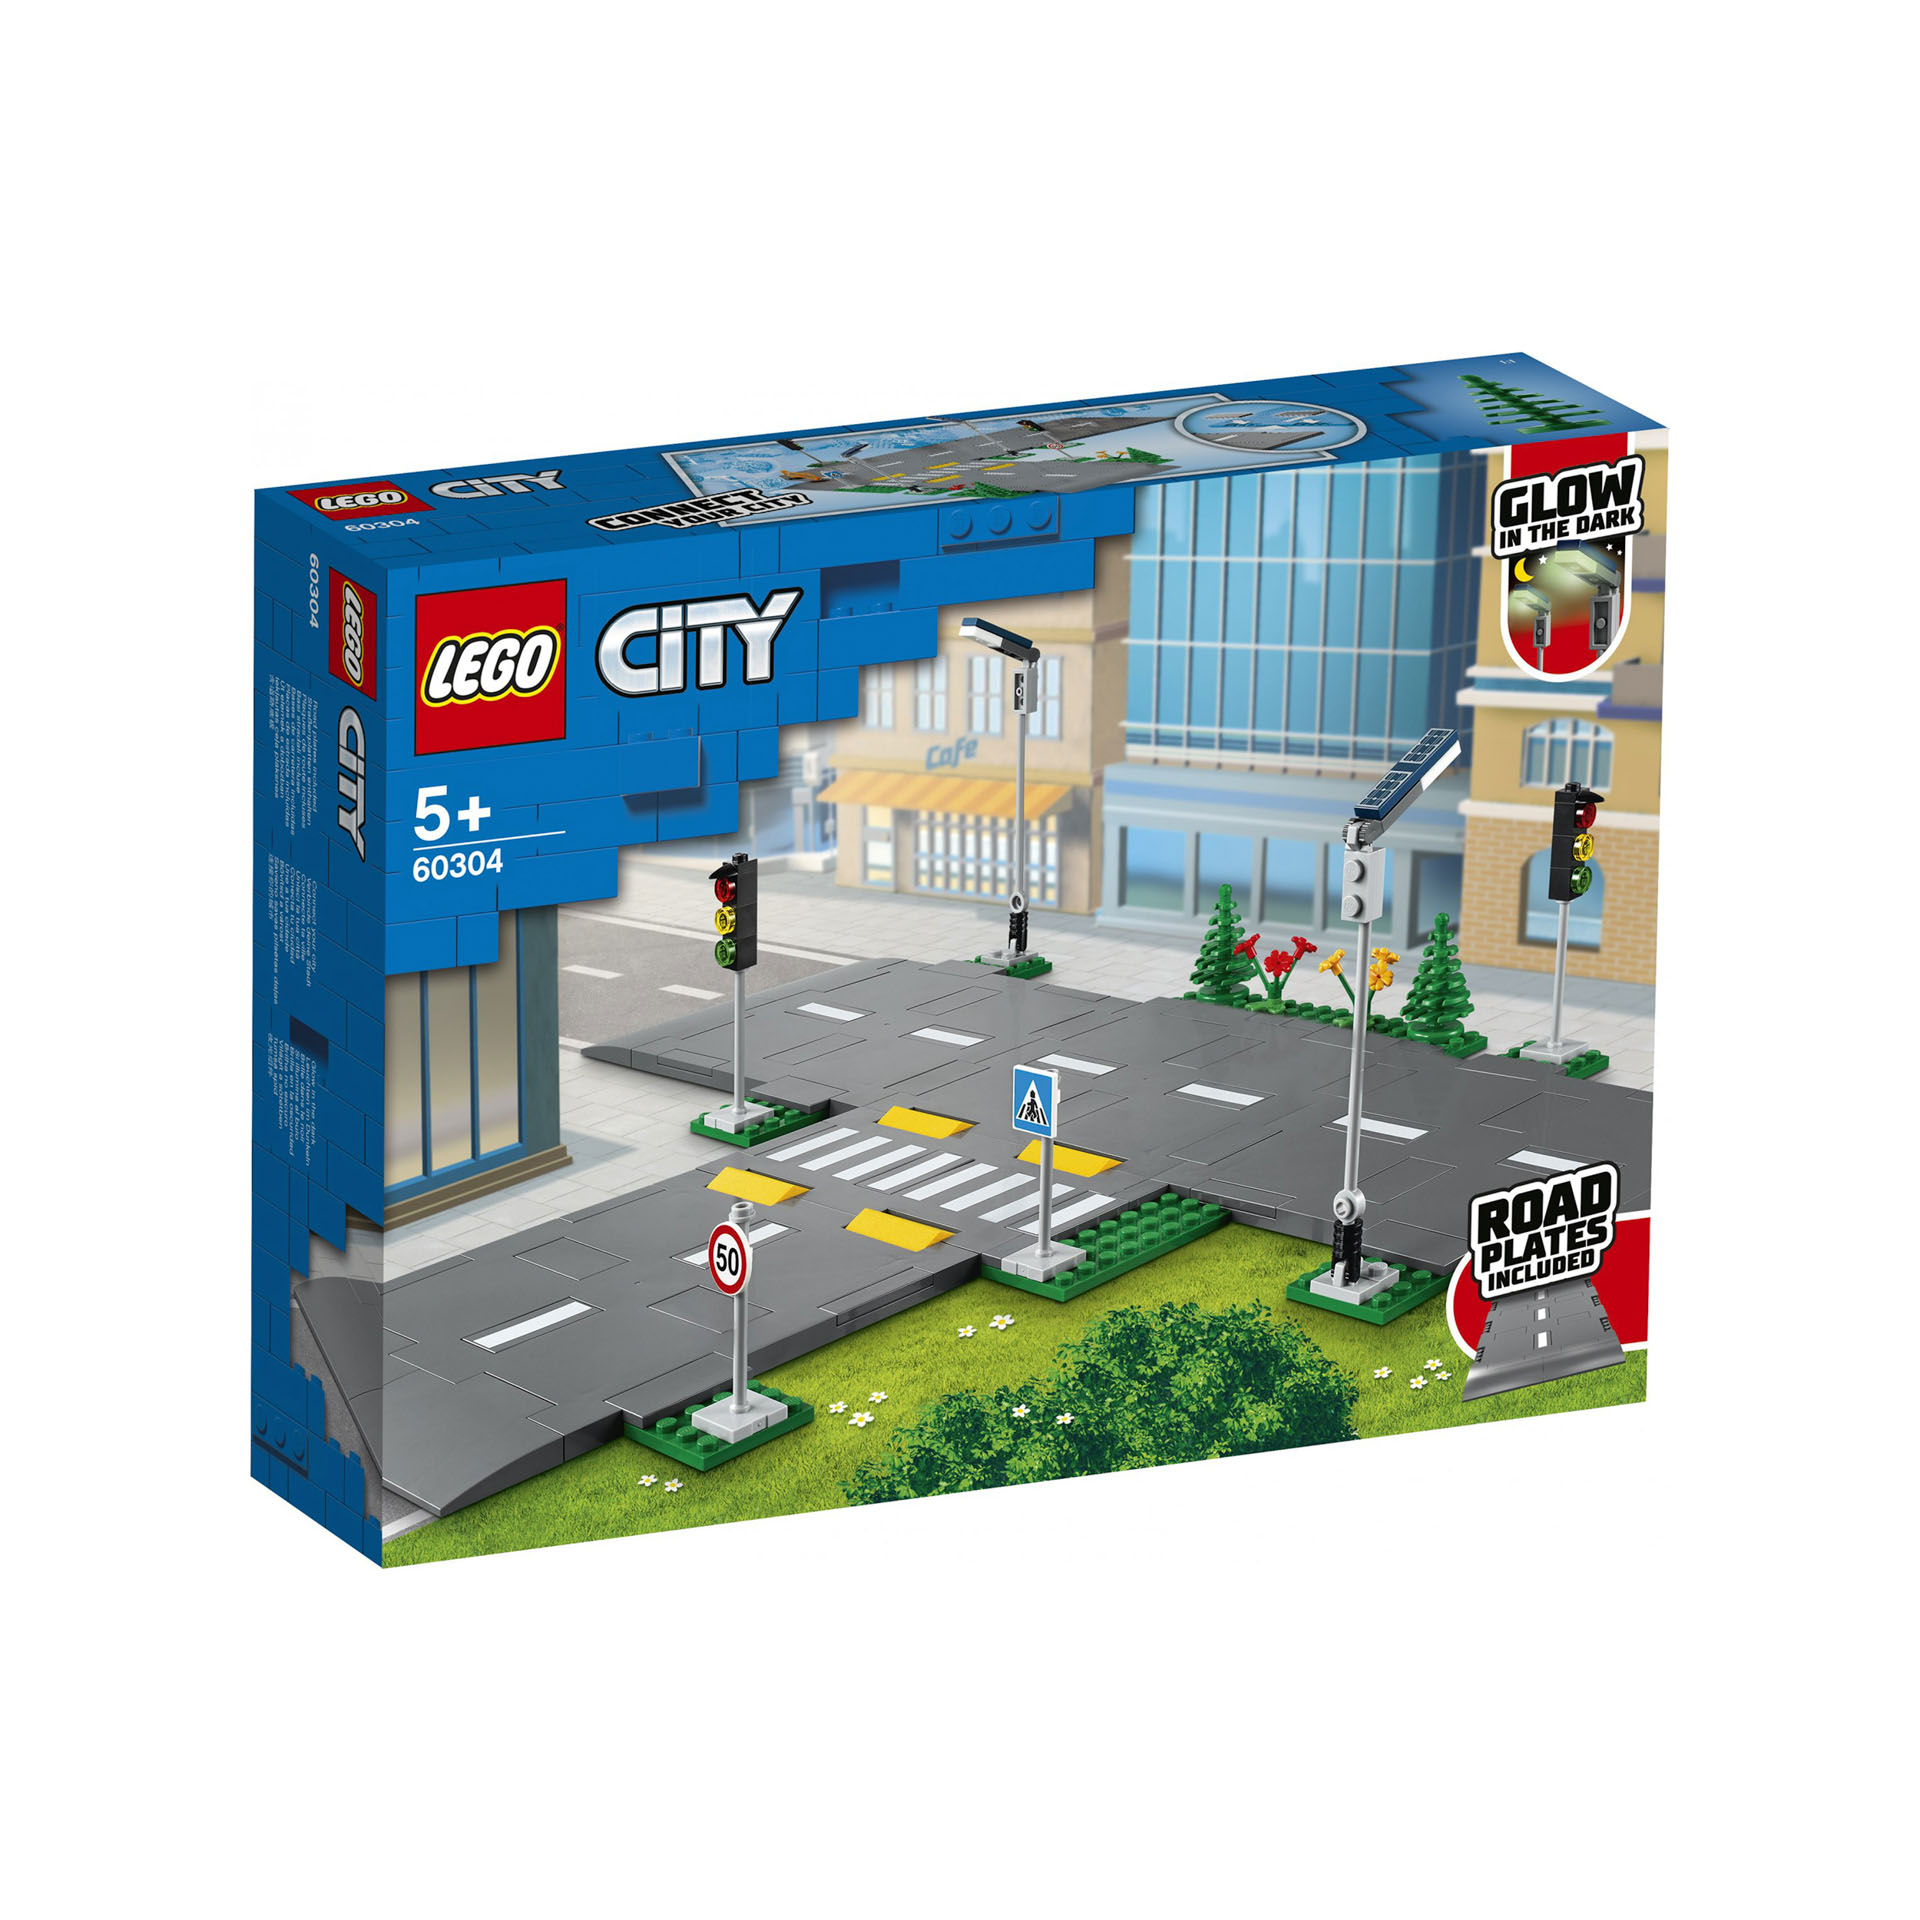 LEGO City Town Piattaforme Stradali, Playset con Lampioni, Semafori e Mattoncini 60304, , large